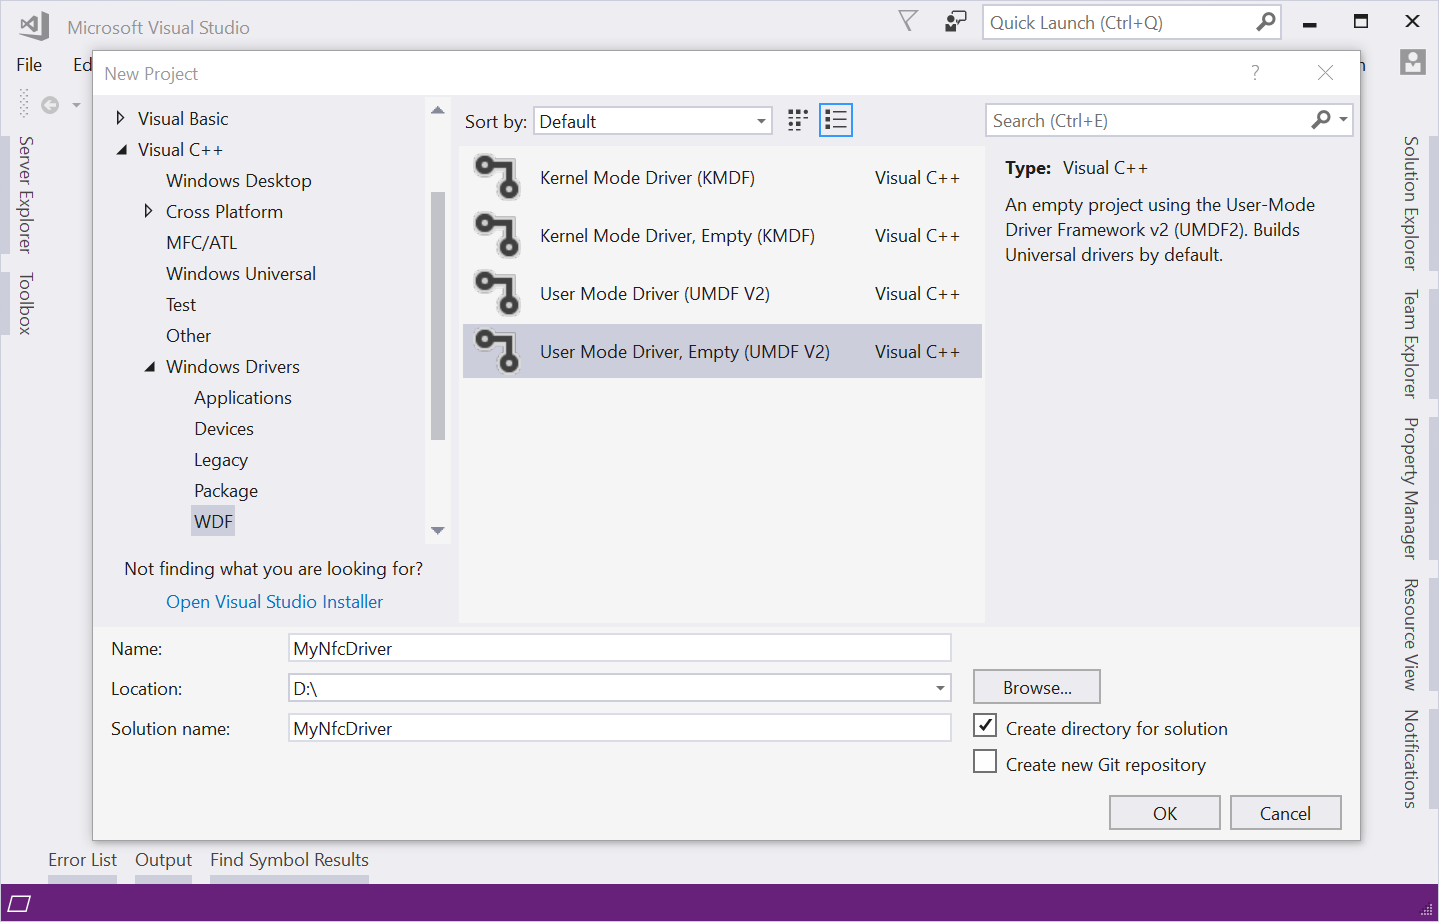 显示 Visual Studio“新建项目”对话框的屏幕截图，其中选择了“用户模式驱动程序，空 (UMDF V2) ”。